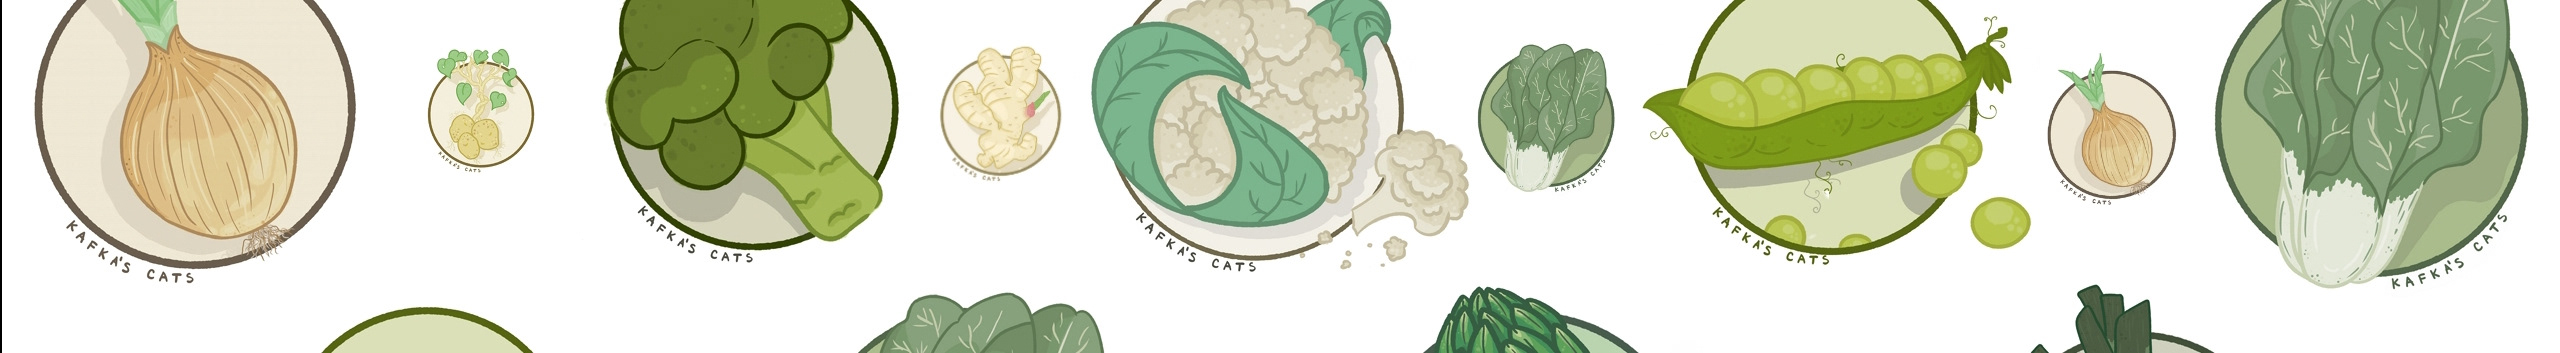 Banner profilu uživatele Kafka's Cats